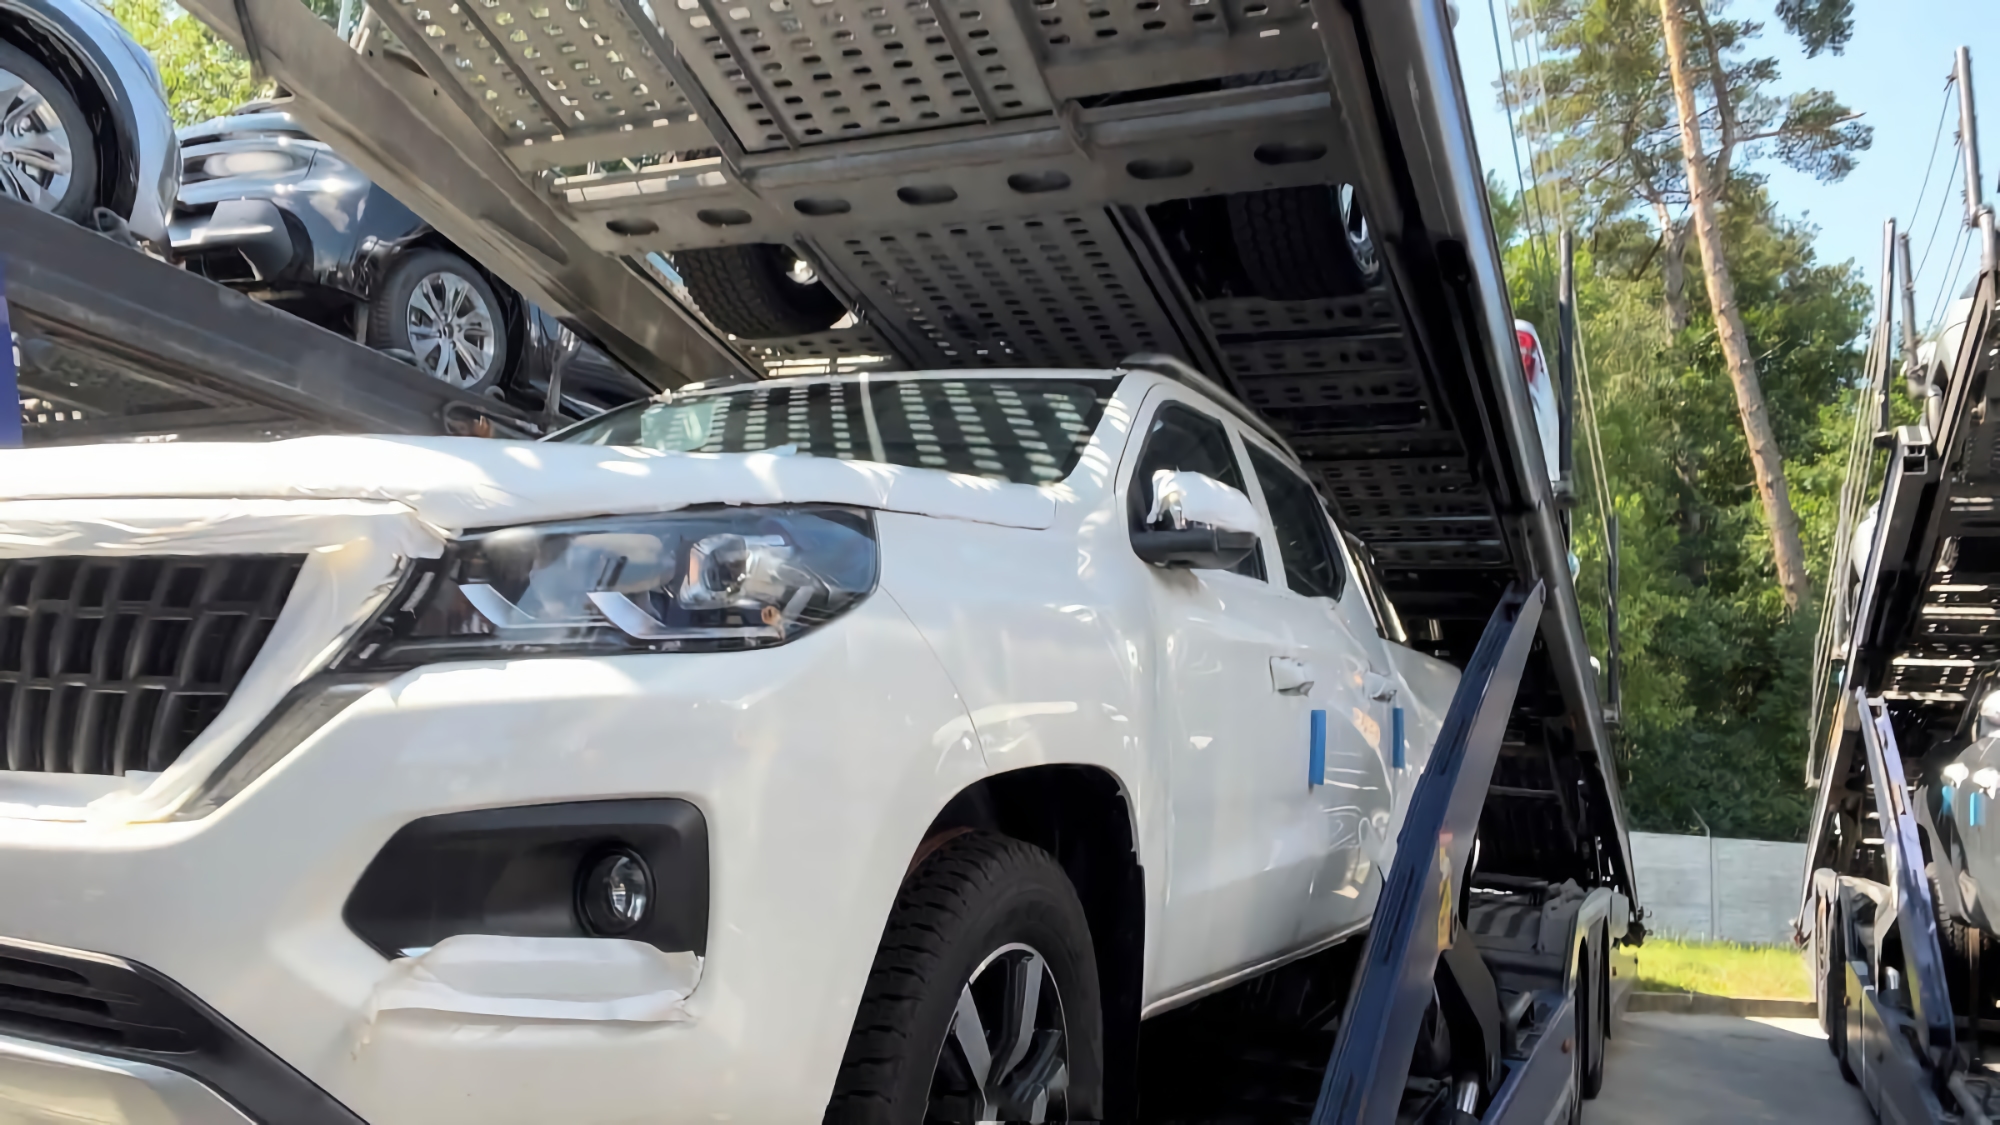 La Fundación Vuelve Vivo compró 100 camionetas nuevas para la APU por importe de 2.600.000 euros